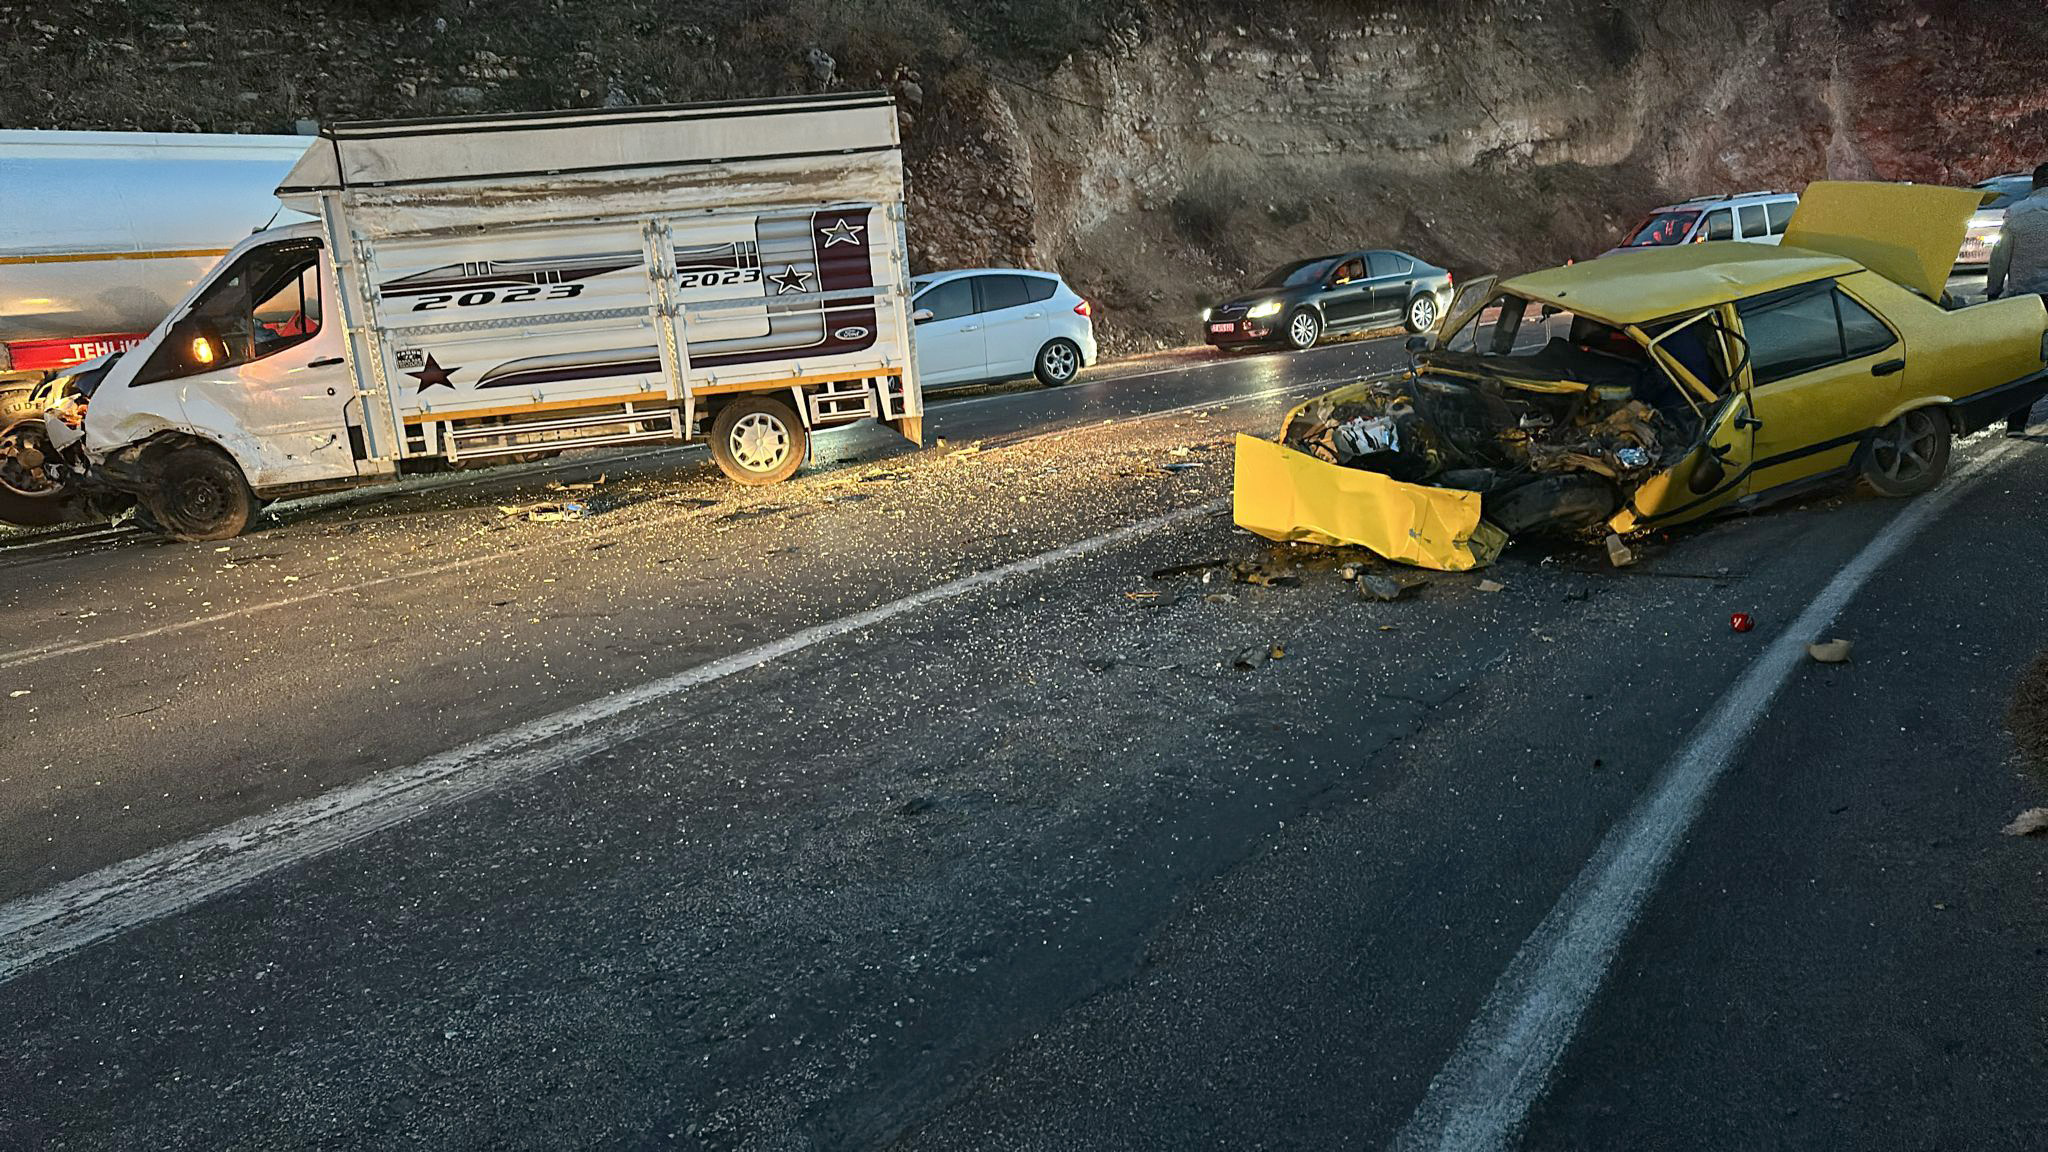 Gaziantep’te otomobil ile kamyonet arasında meydana gelen çarpışma sonucunda 2 kişi yaralandı.